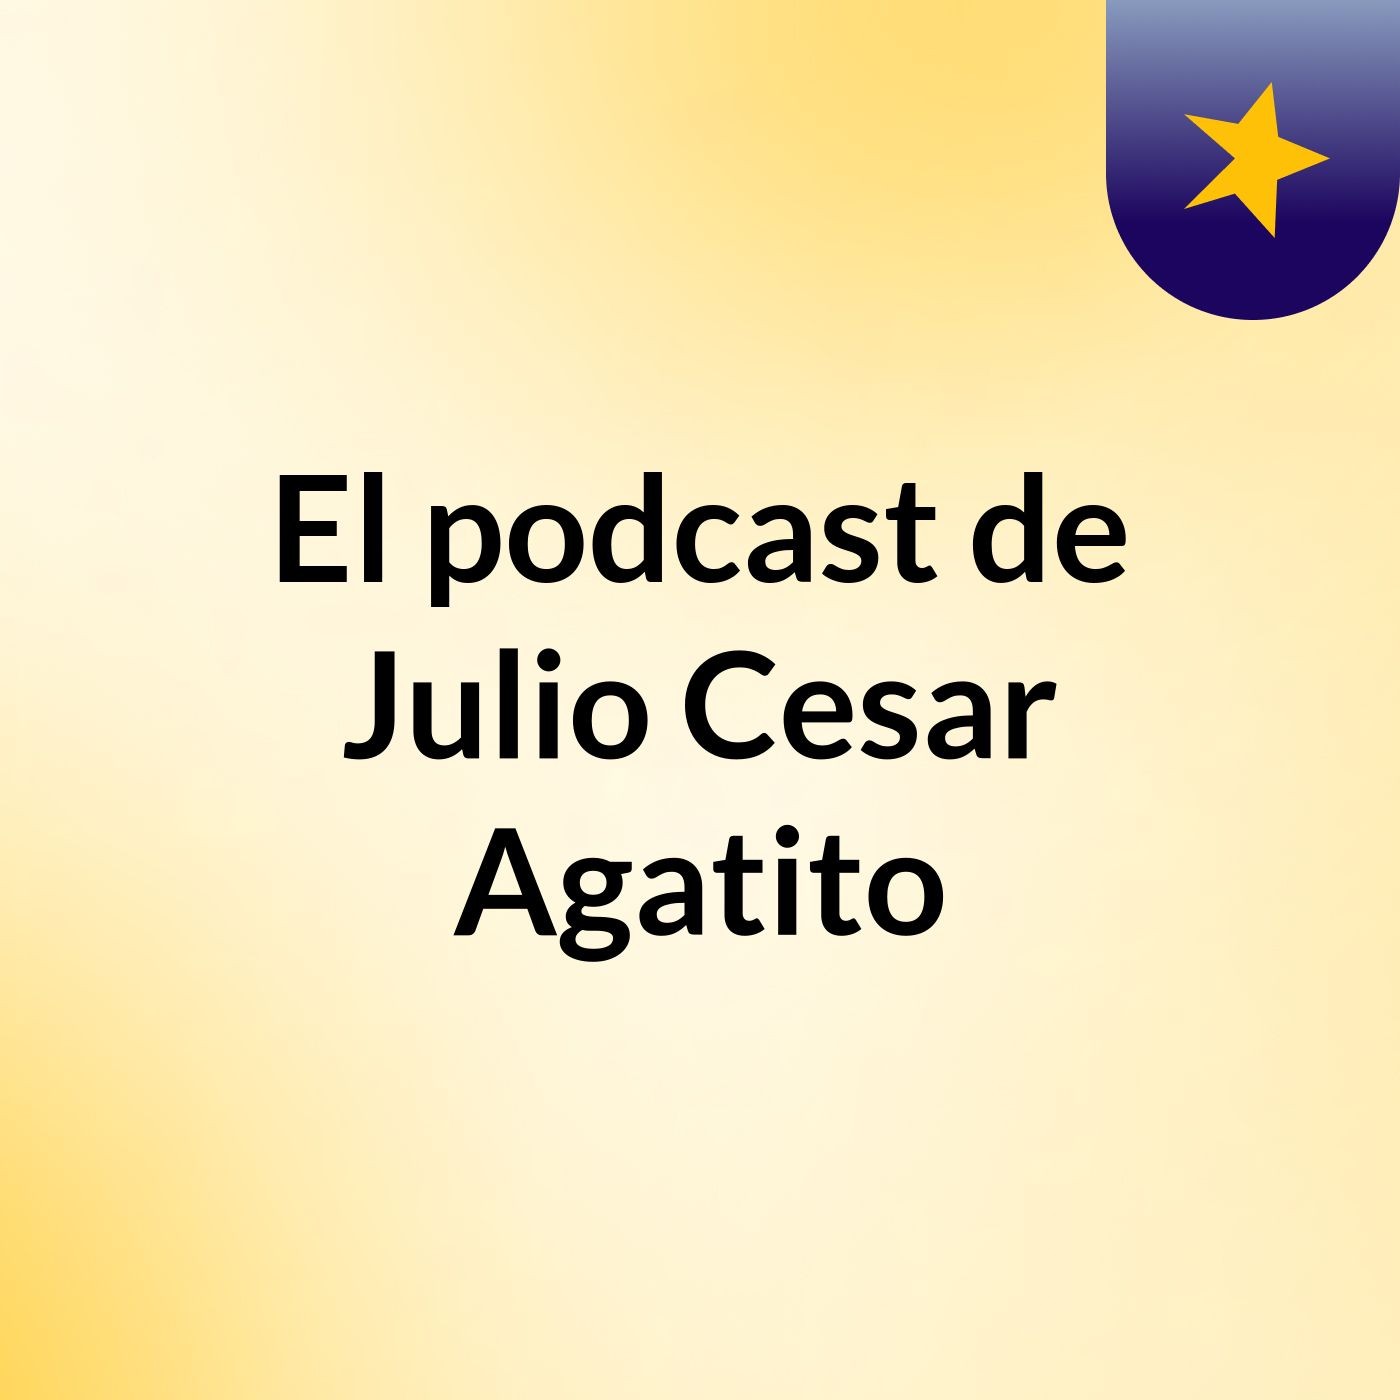 El podcast de Julio Cesar Agatito